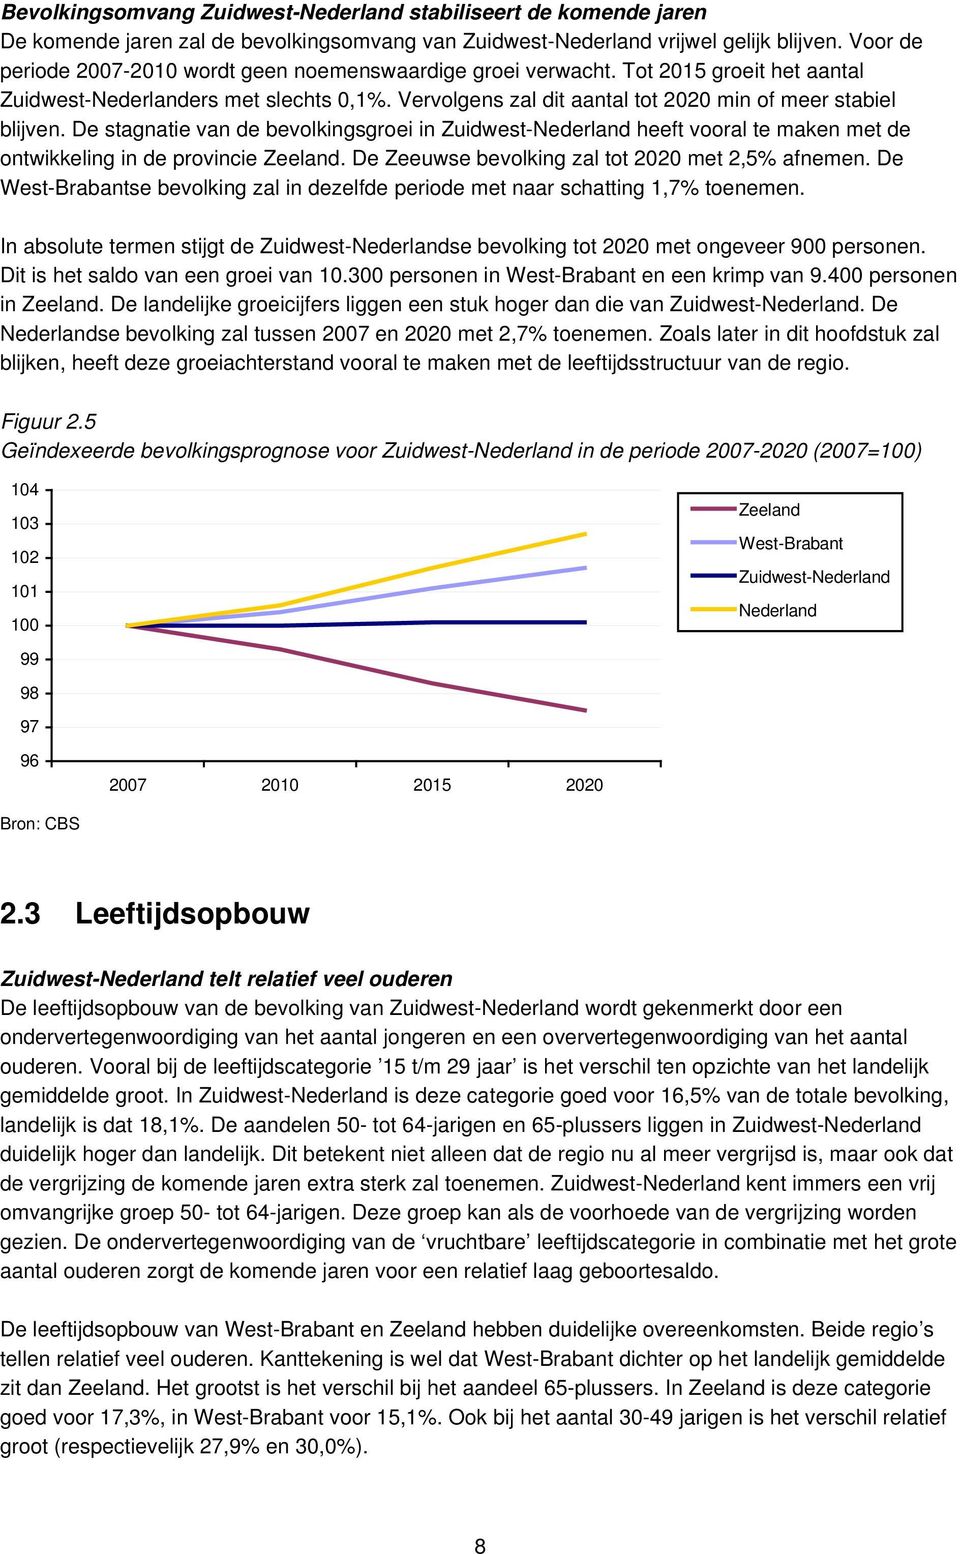 De stagnatie van de bevolkingsgroei in Zuidwest-Nederland heeft vooral te maken met de ontwikkeling in de provincie Zeeland. De Zeeuwse bevolking zal tot 2020 met 2,5% afnemen.